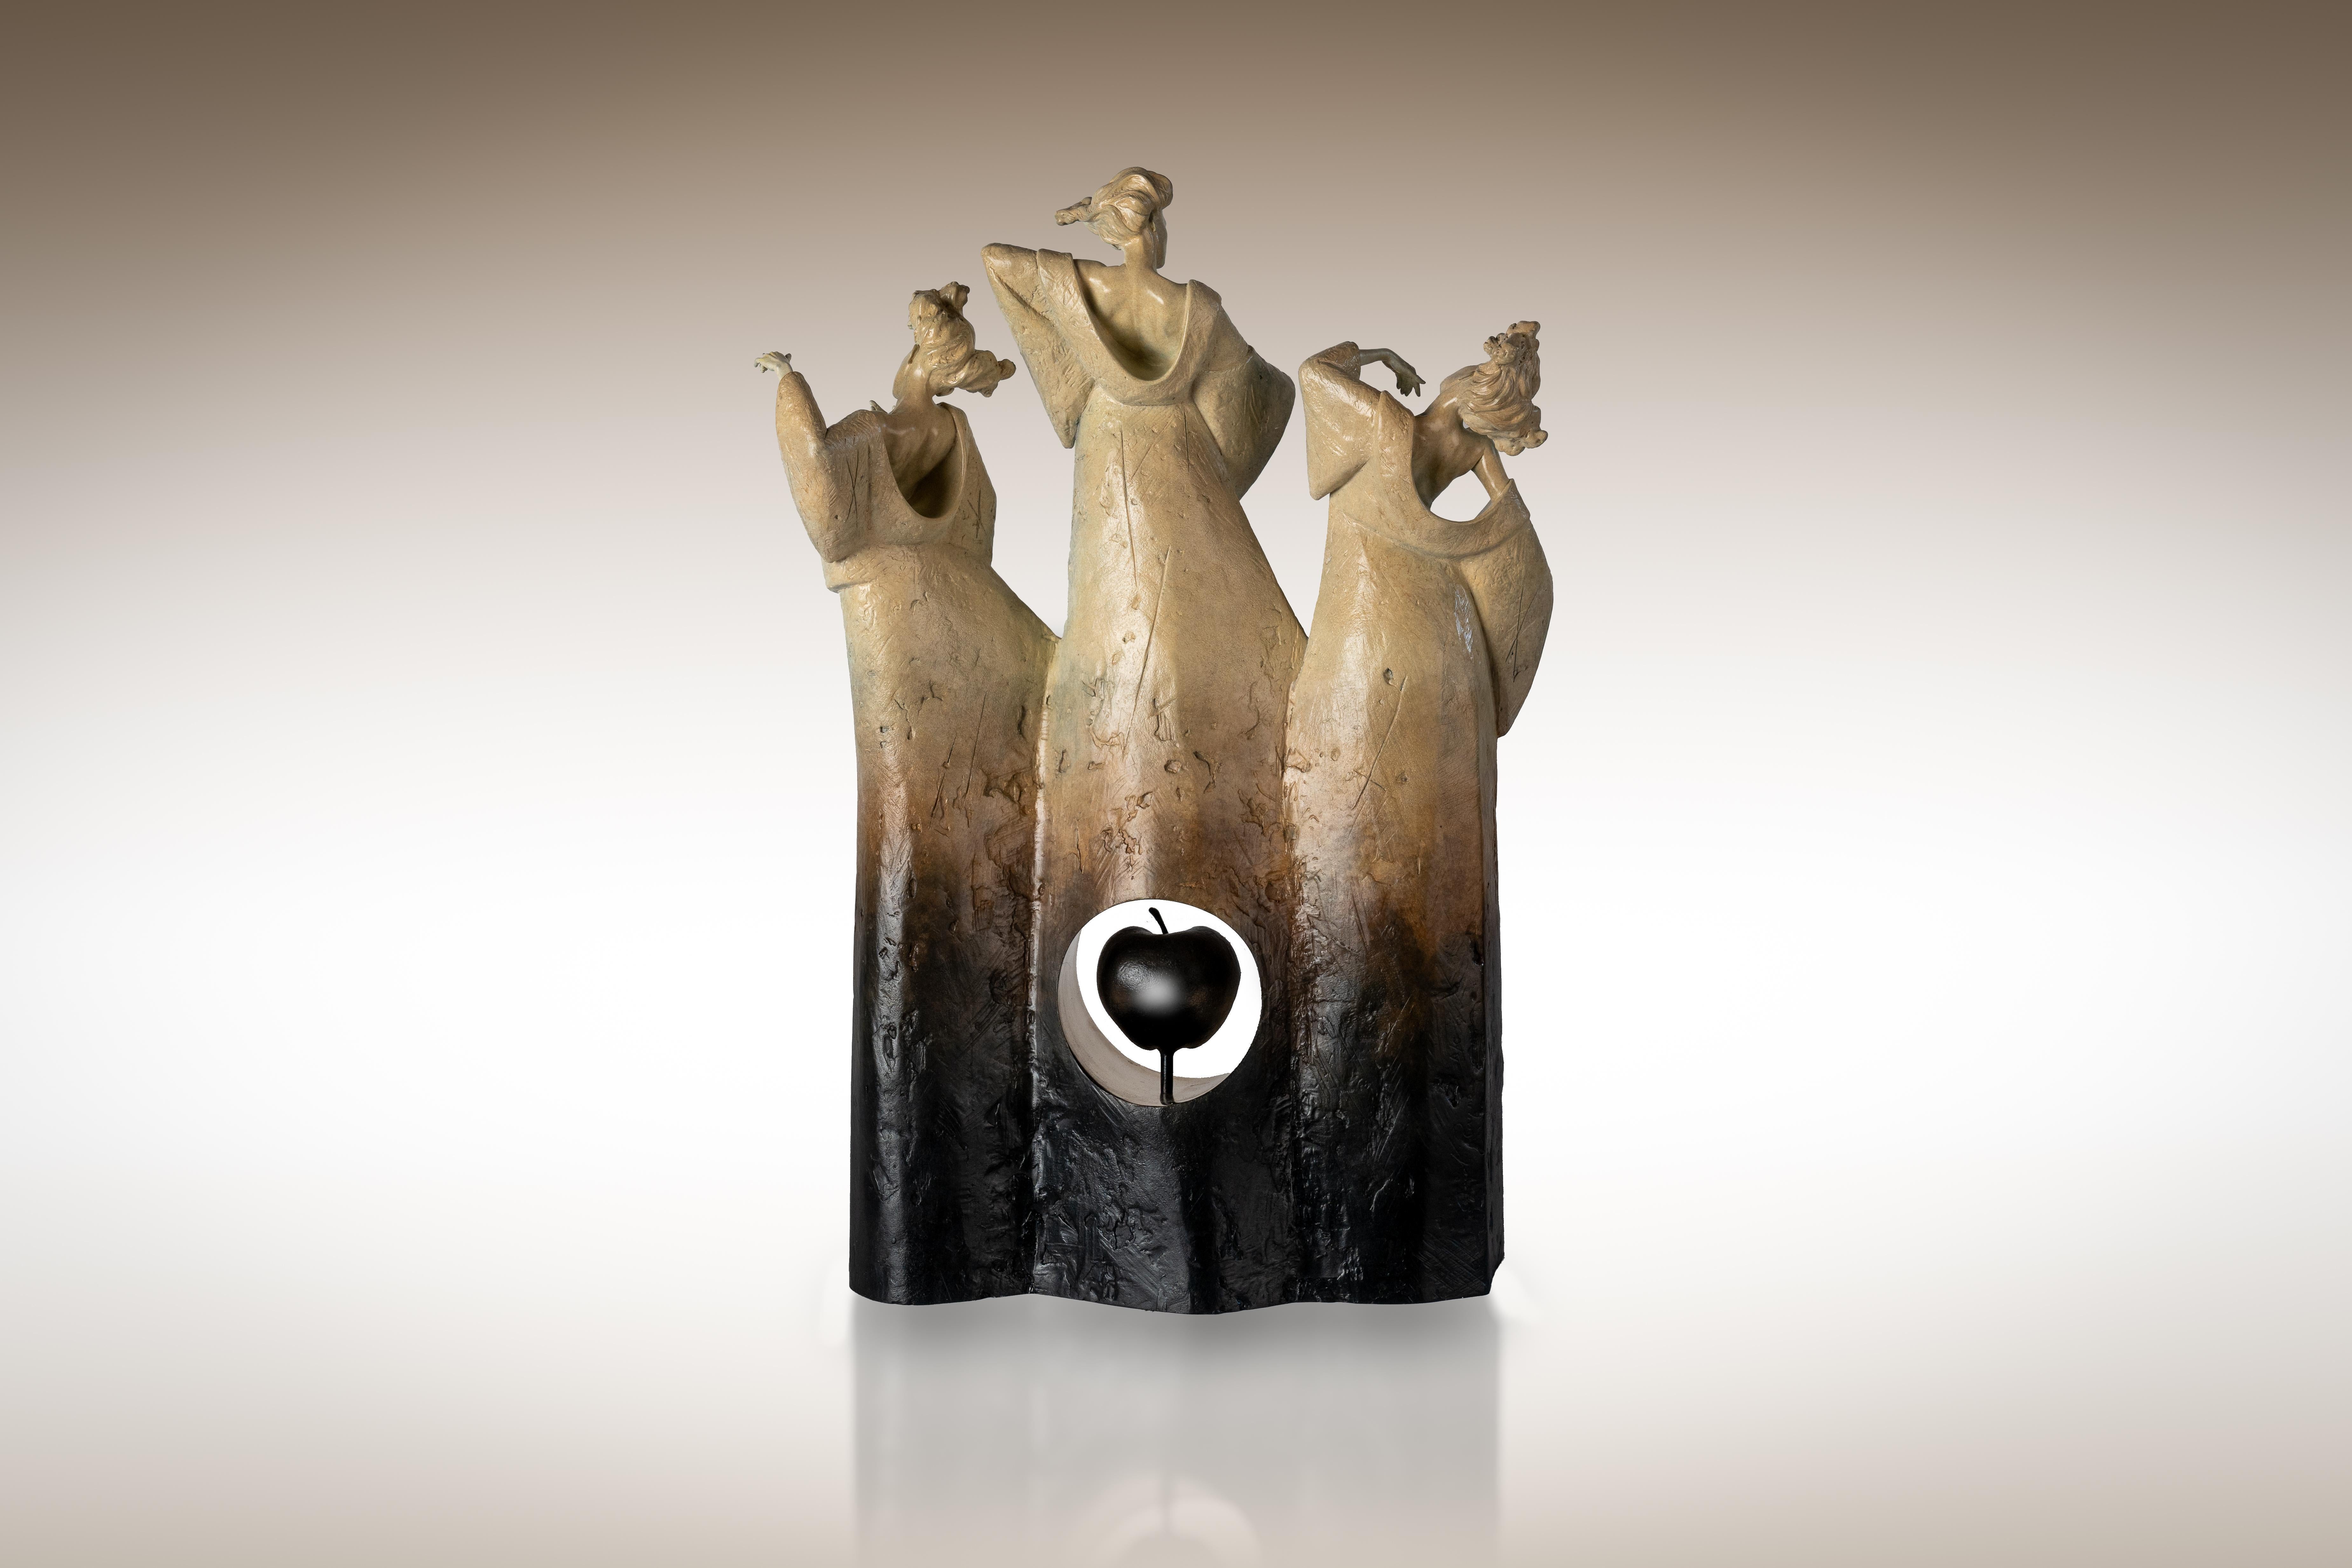 Contemporary Bronze Skulptur Antiker griechischer Mythos 'The Three Fates', figurativ – Sculpture von Carl Payne